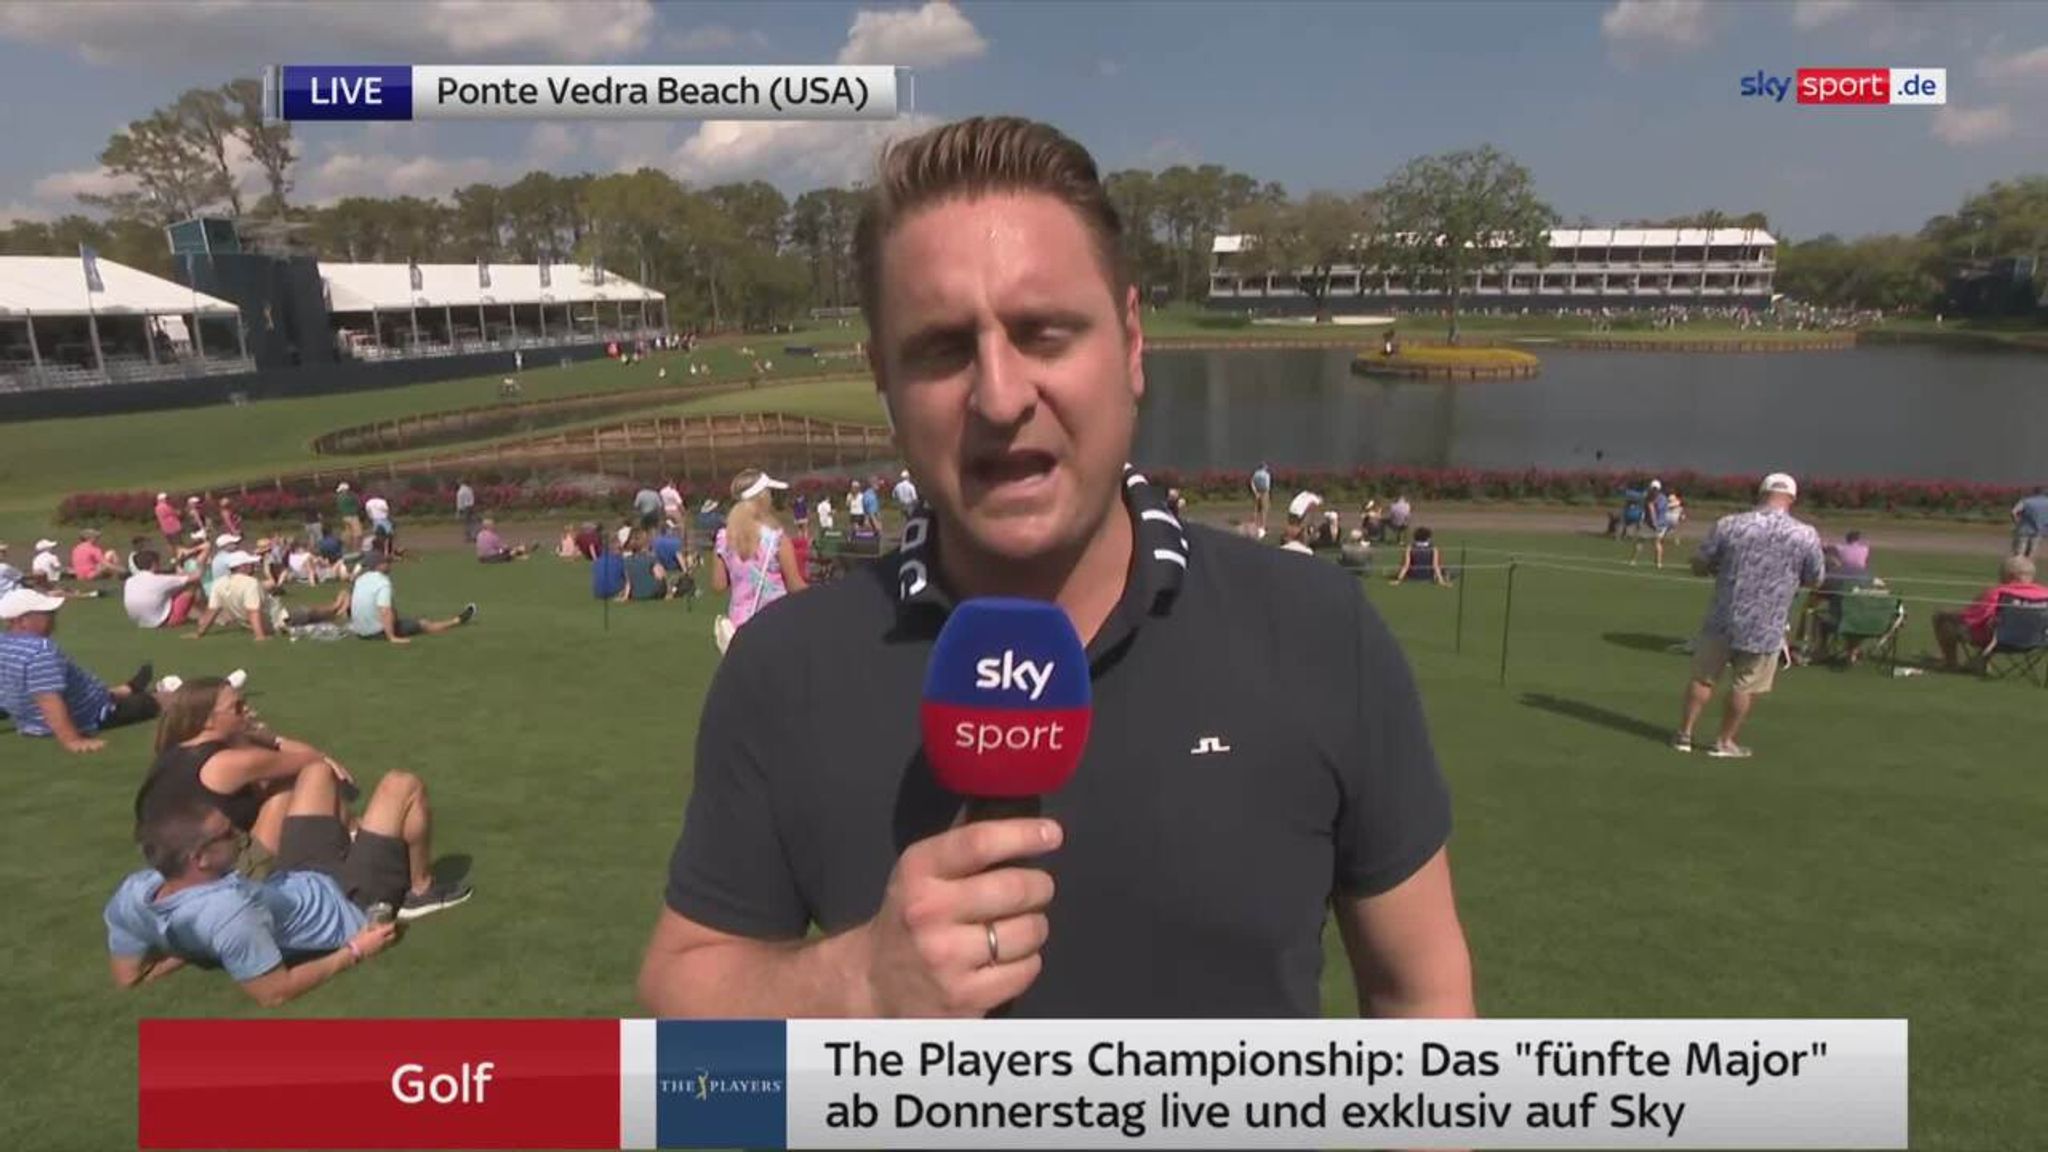 Golf The Players Championship will das größte Turnier der Welt werden Golf News Sky Sport